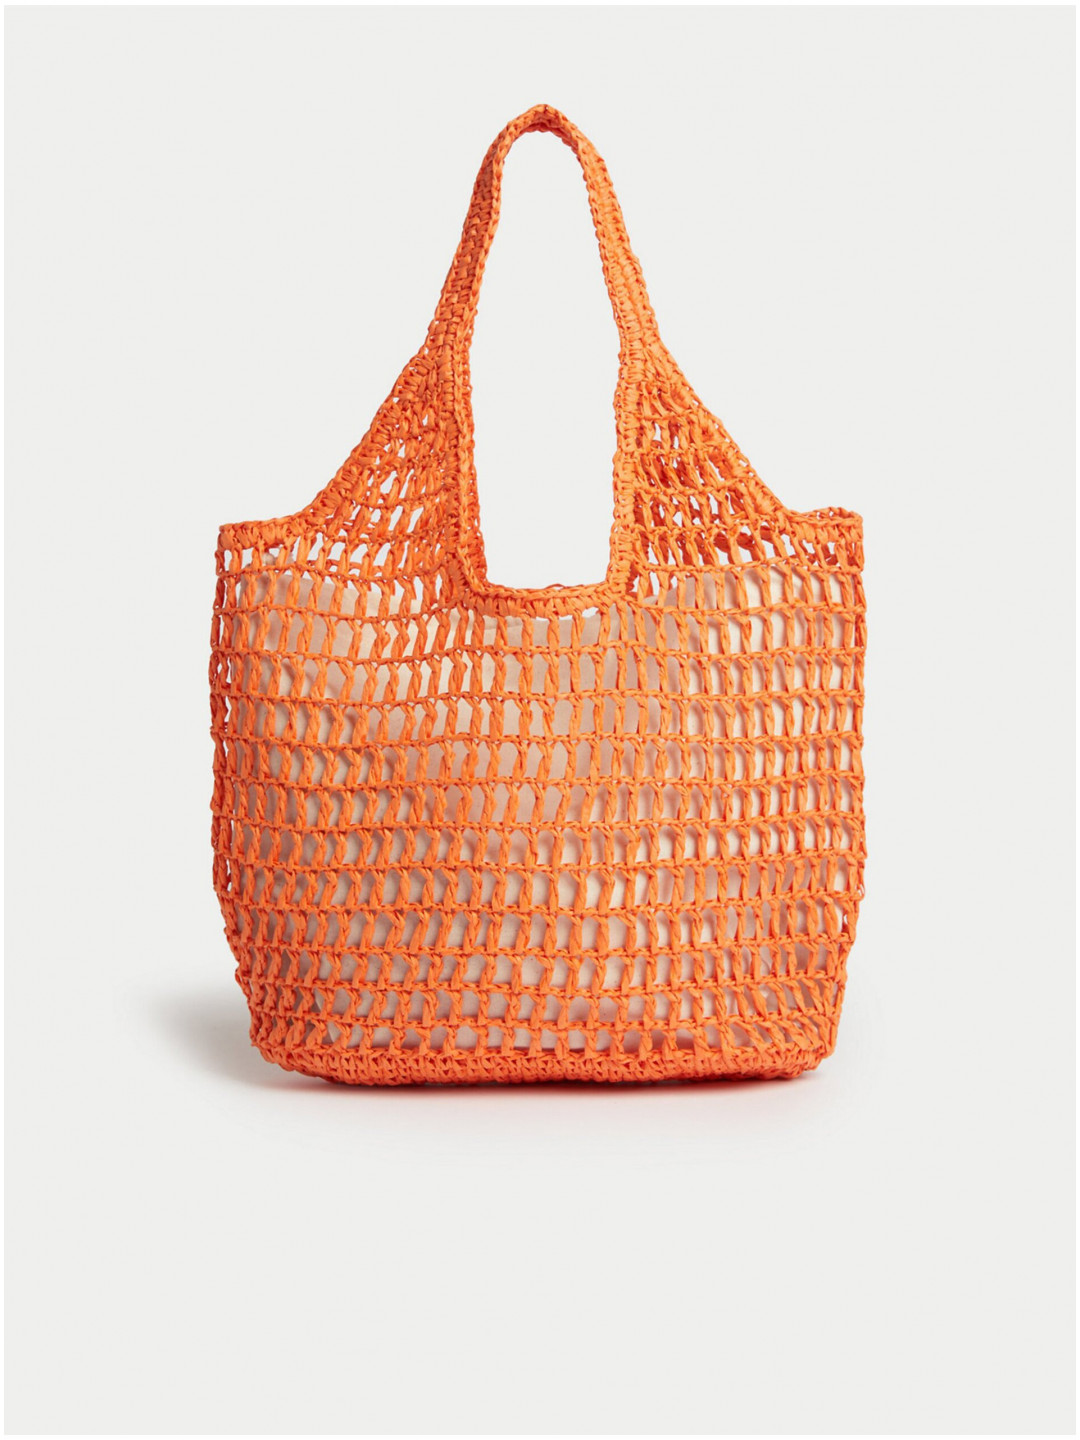 Oranžová dámská plážová taška Marks & Spencer